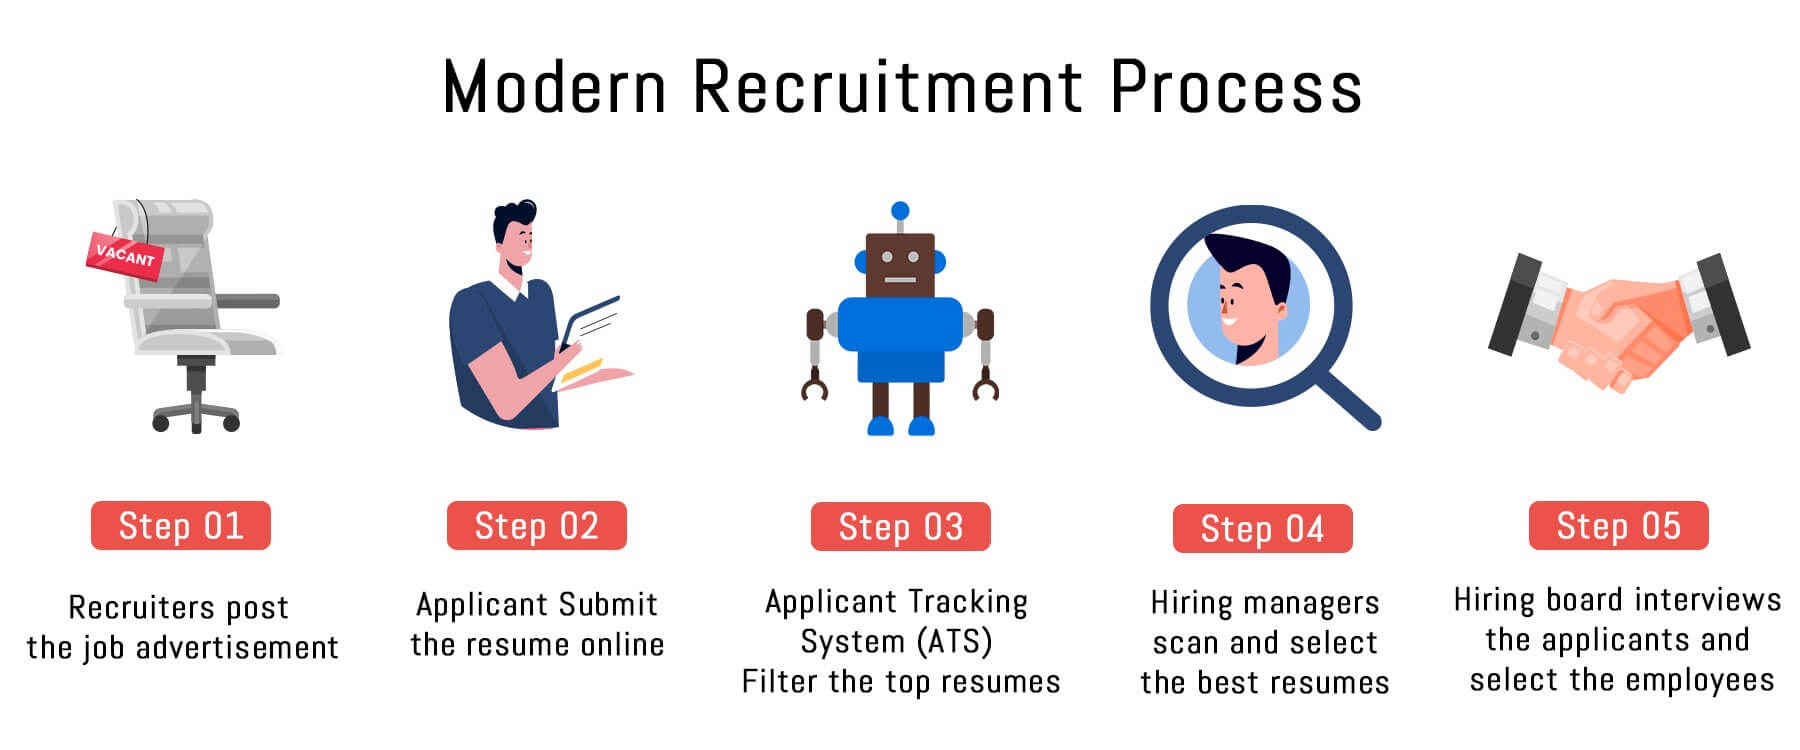 modern recruitment process- package handler